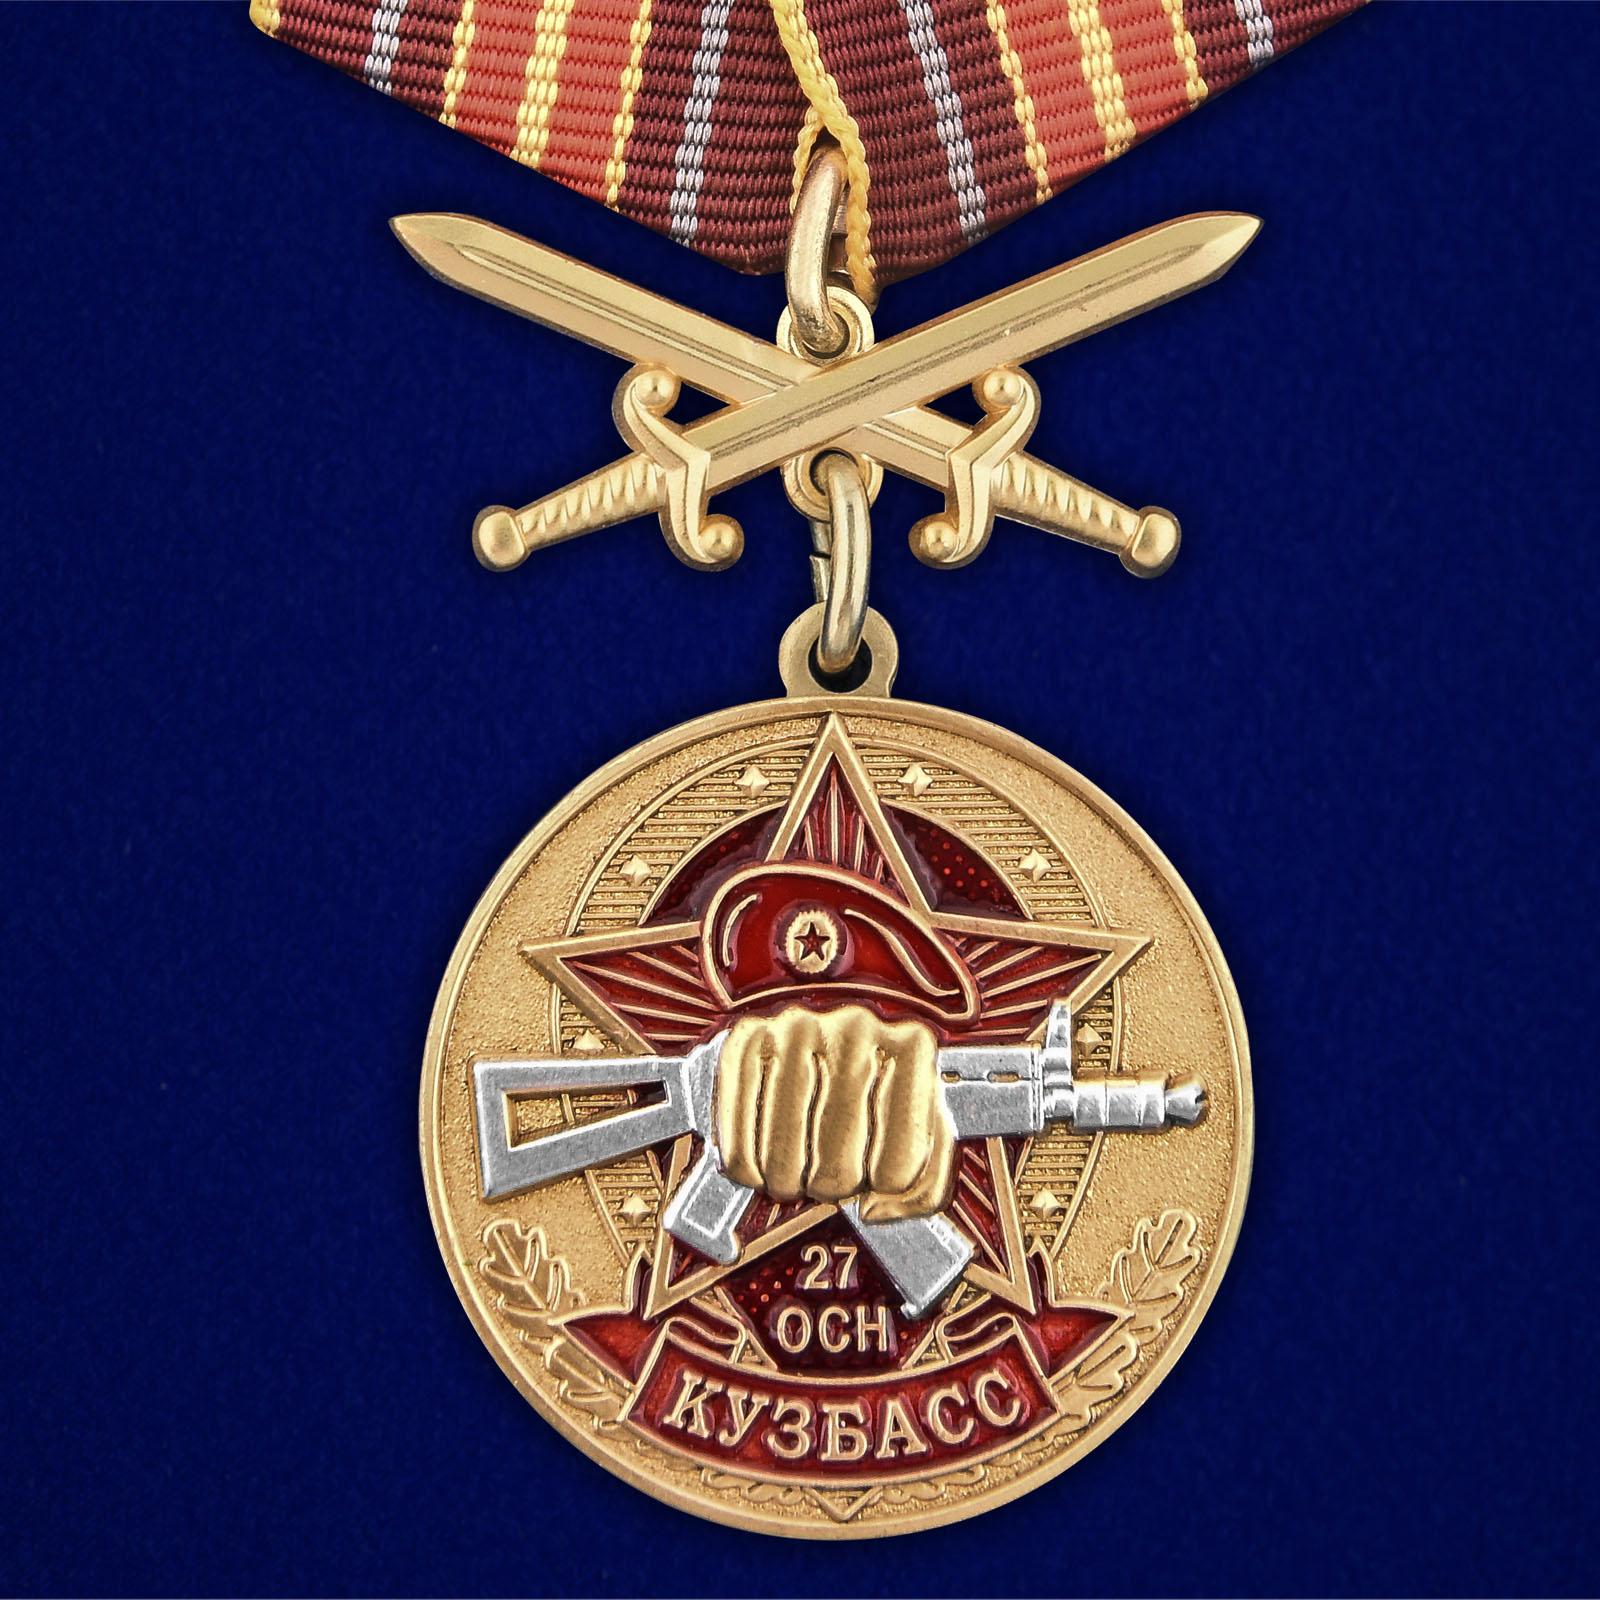 Купить медаль За службу в 27-м ОСН Кузбасс выгодно